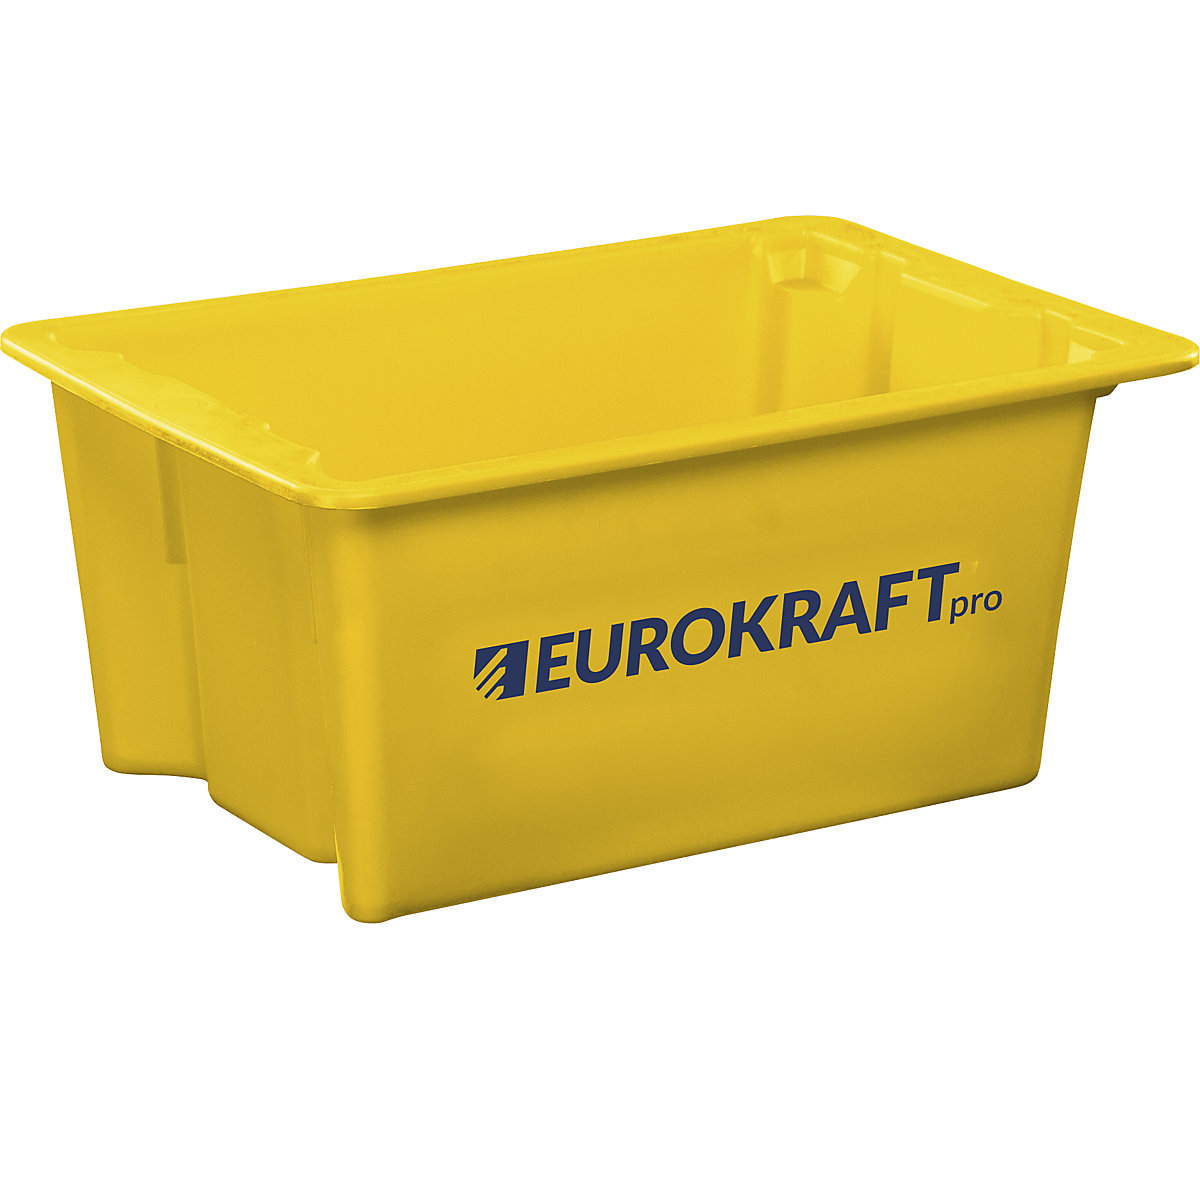 Drehstapelbehälter aus lebensmittelechtem Polypropylen eurokraft pro, Inhalt 6 Liter, VE 4 Stk, Wände und Boden geschlossen, gelb